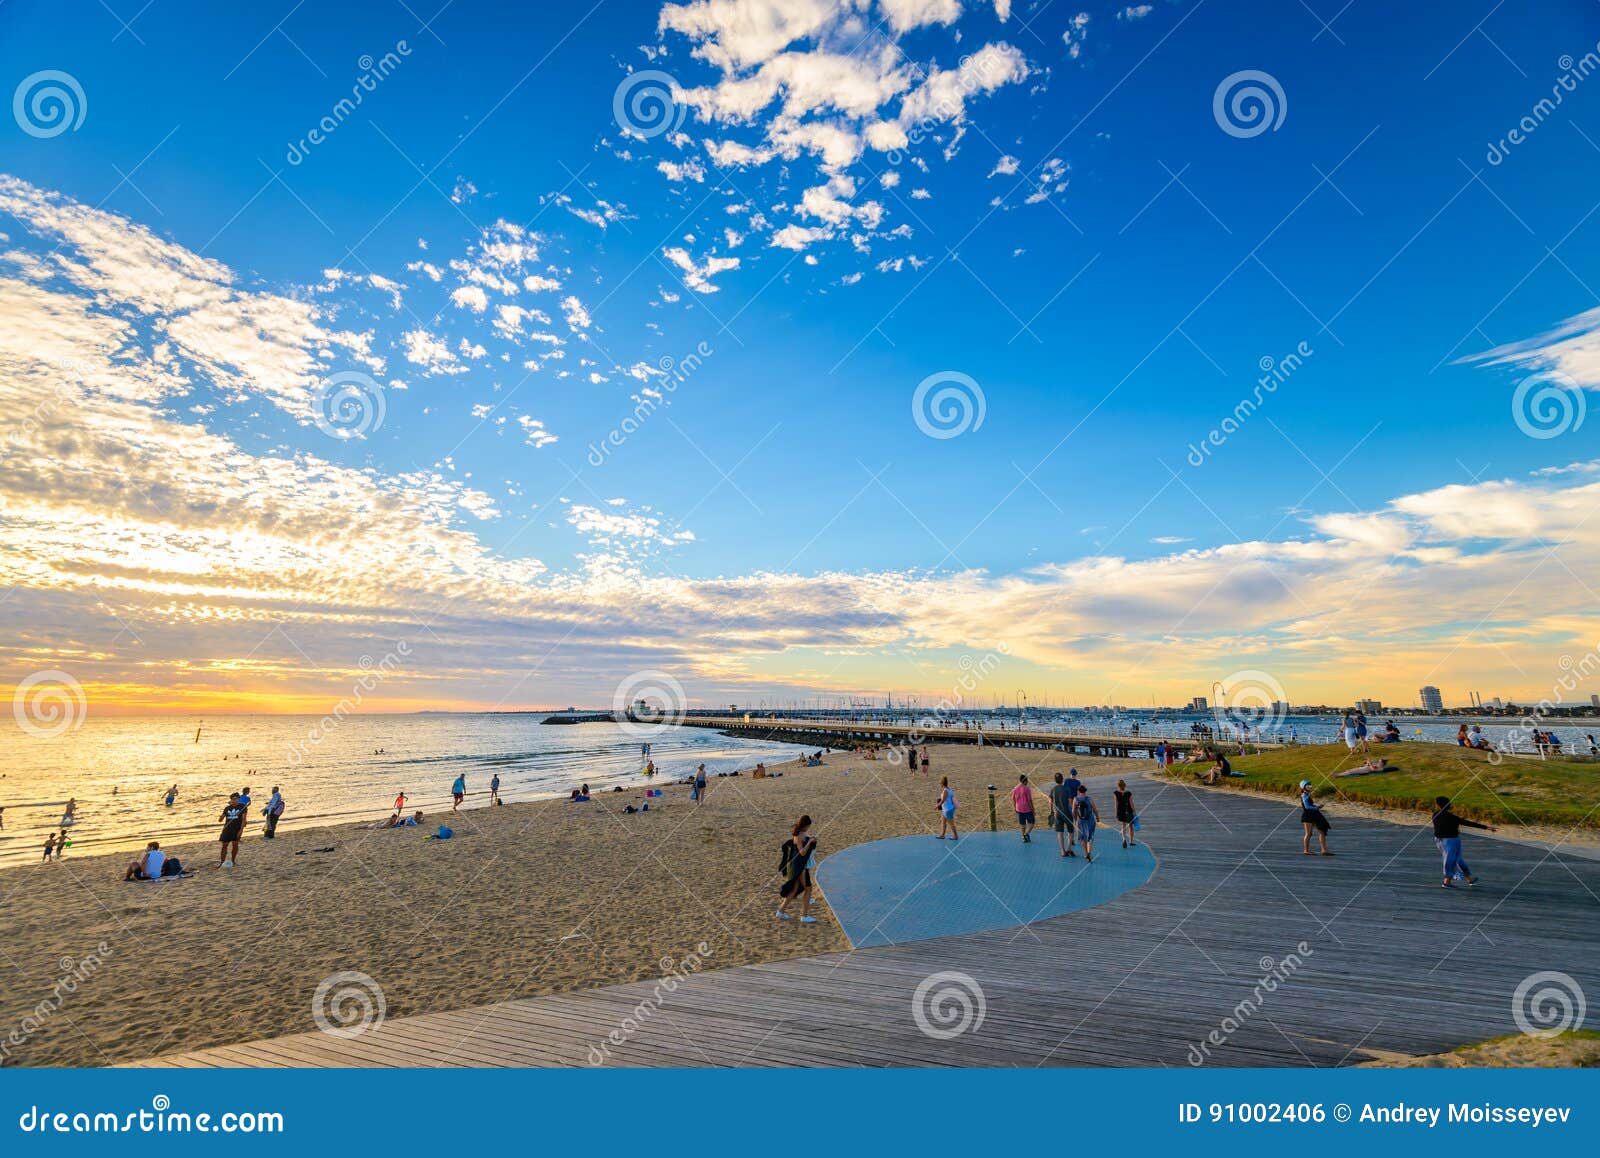 St Kilda Beach, Melbourne Australia